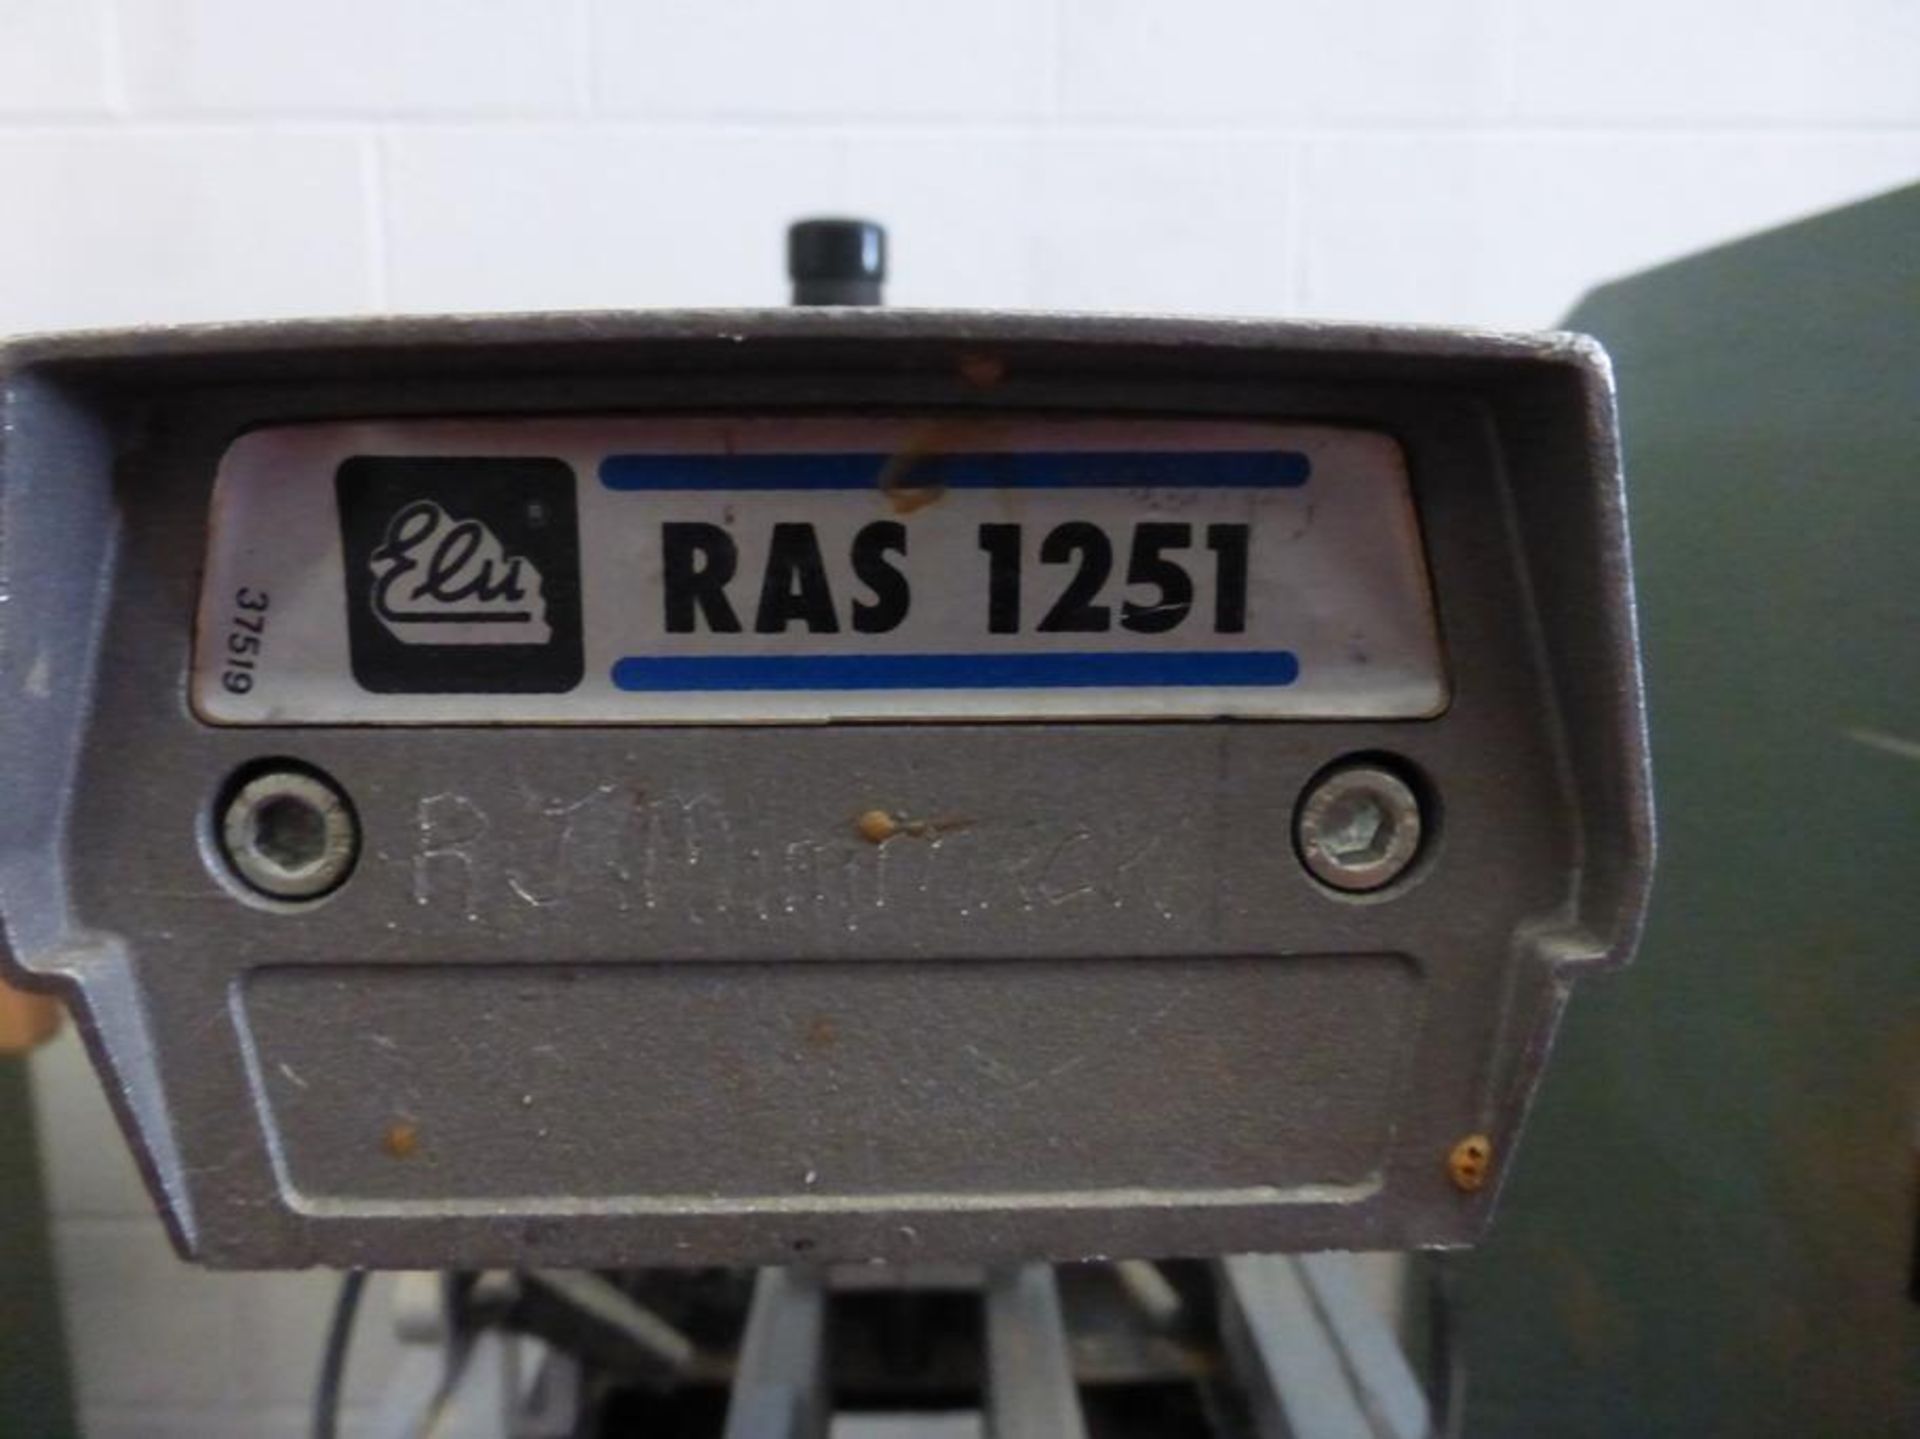 Elu Ras 1251 Power Shop Radial Arm Saw S/N 1136 24 - Image 5 of 5